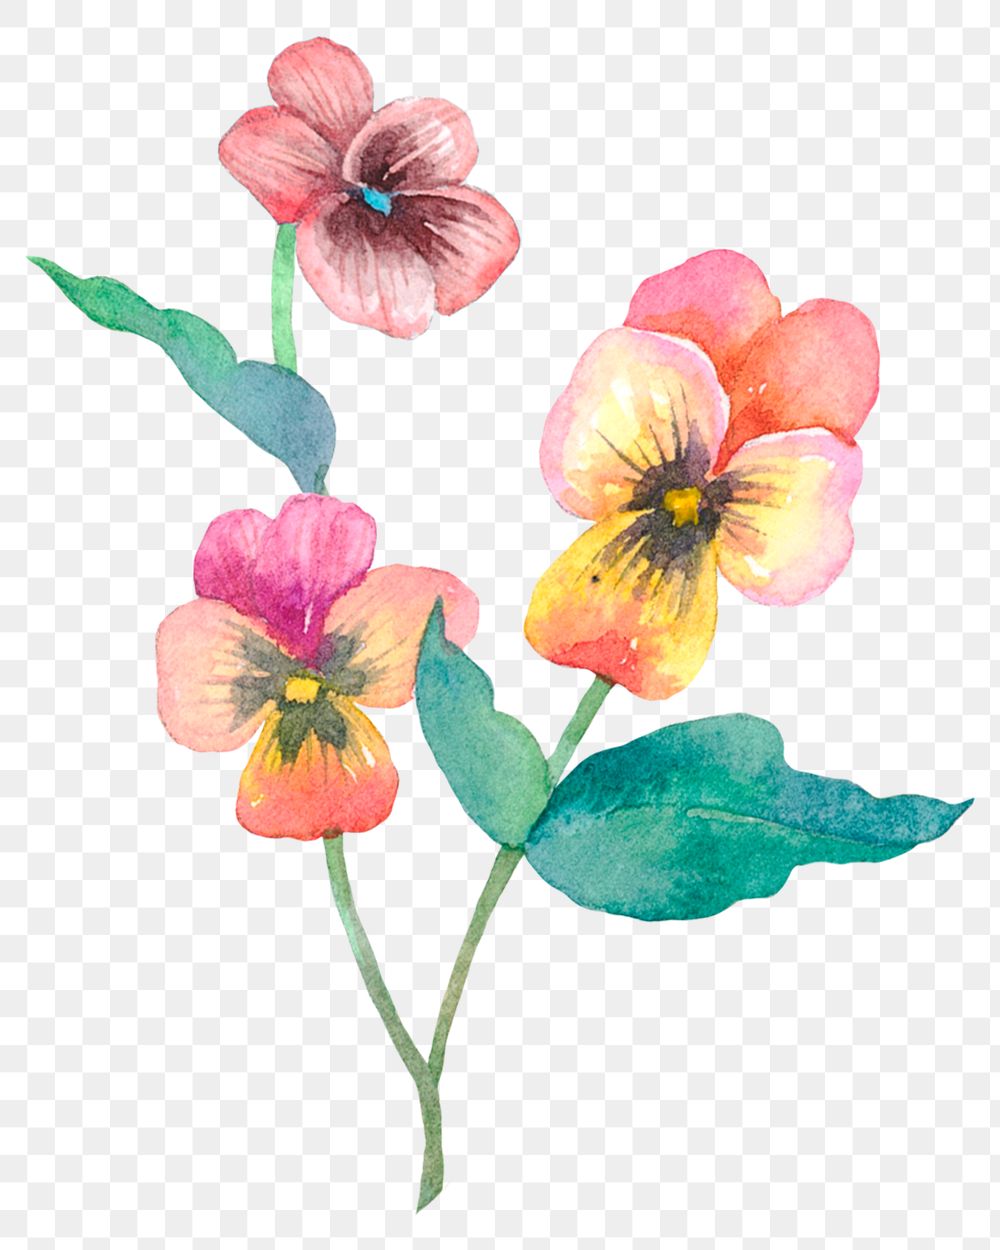 Png Easter spring flowers design element watercolor illustration